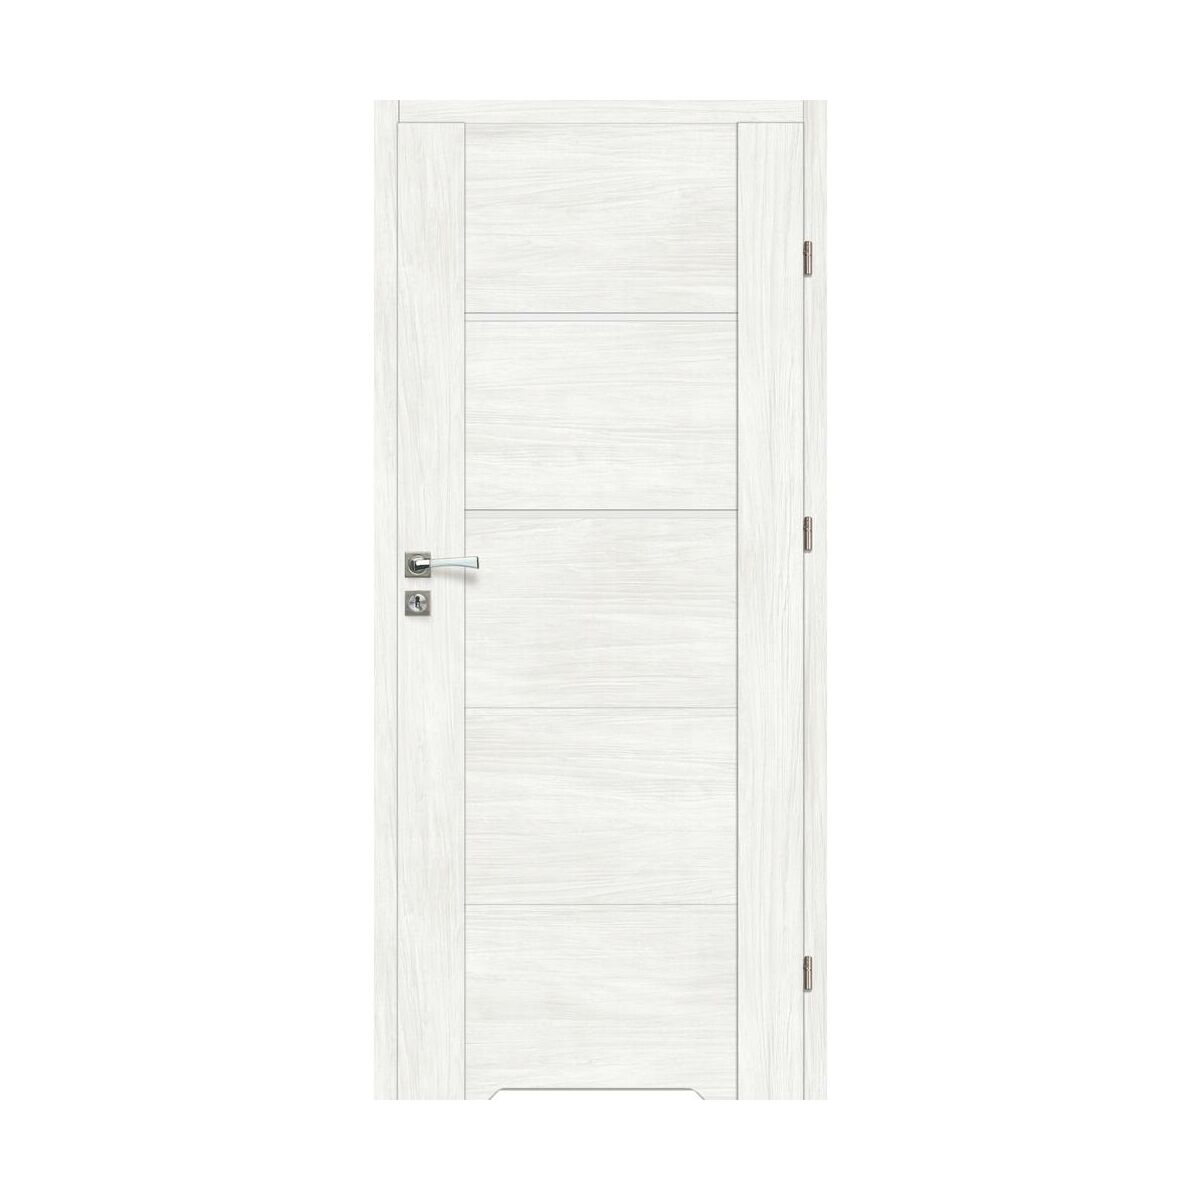 Drzwi wewnętrzne łazienkowe z podcięciem wentylacyjnym Malibu Bianco 80 Prawe Artens